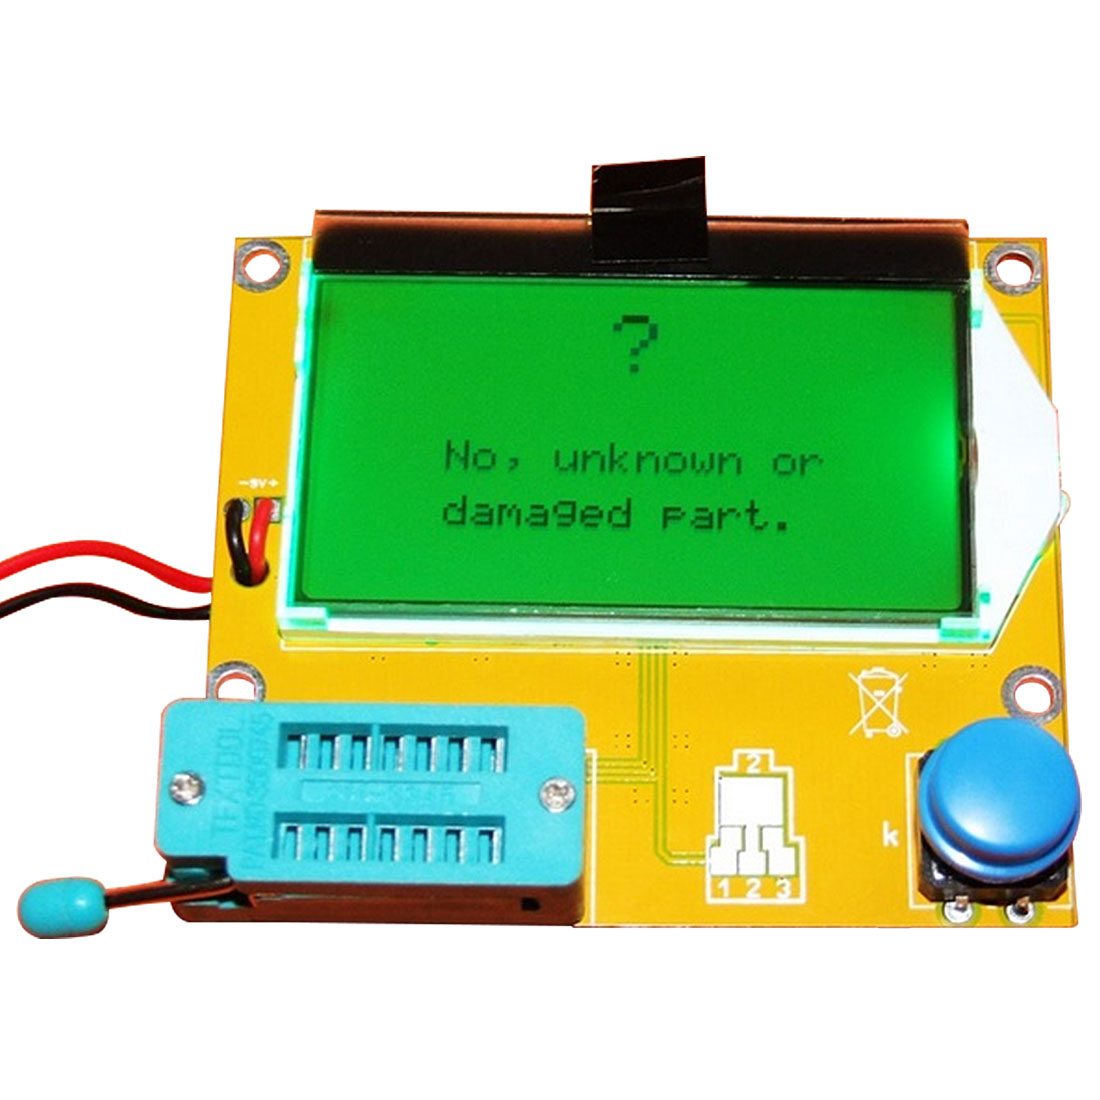 ESR-T4 Mega328 Digital Transistor Tester Diode Triode Capacitance ESR Meter MOS/PNP/NPN LCR 12864 9V LCD screen